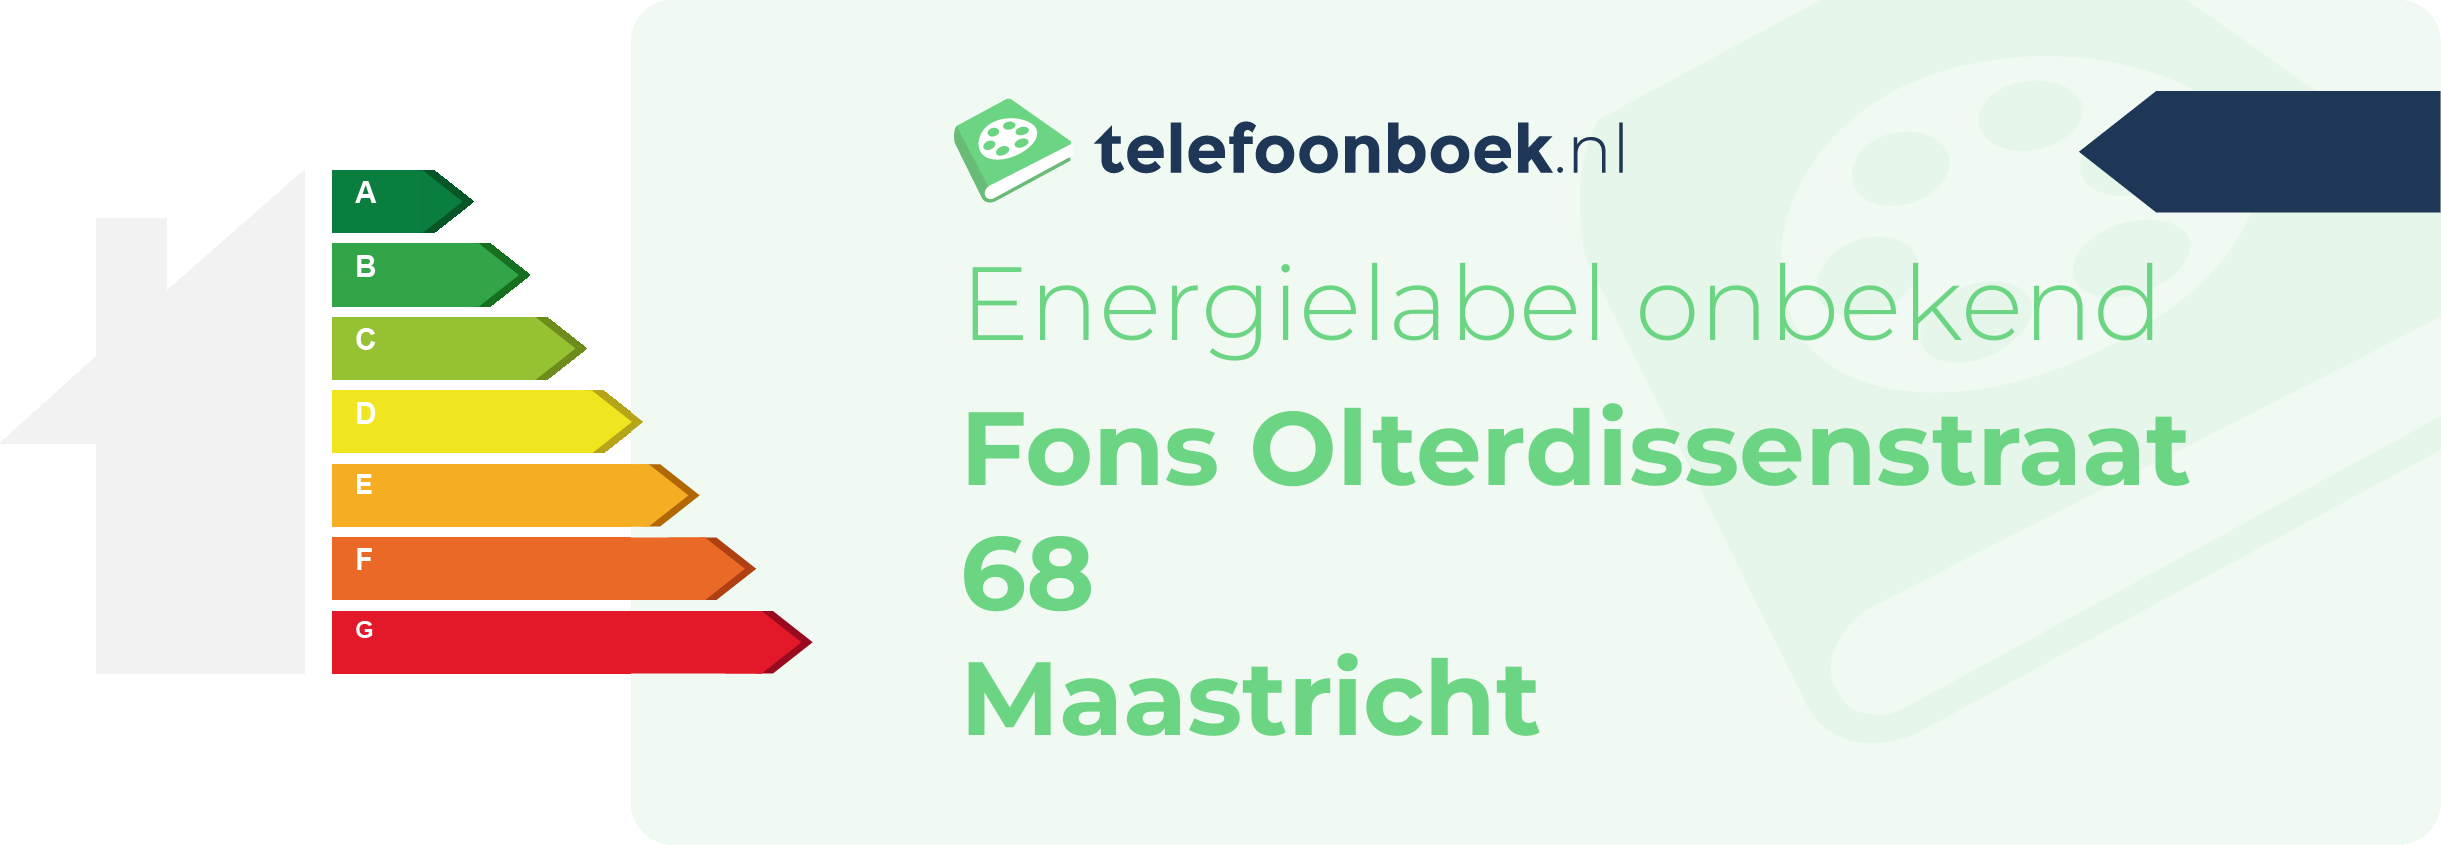 Energielabel Fons Olterdissenstraat 68 Maastricht